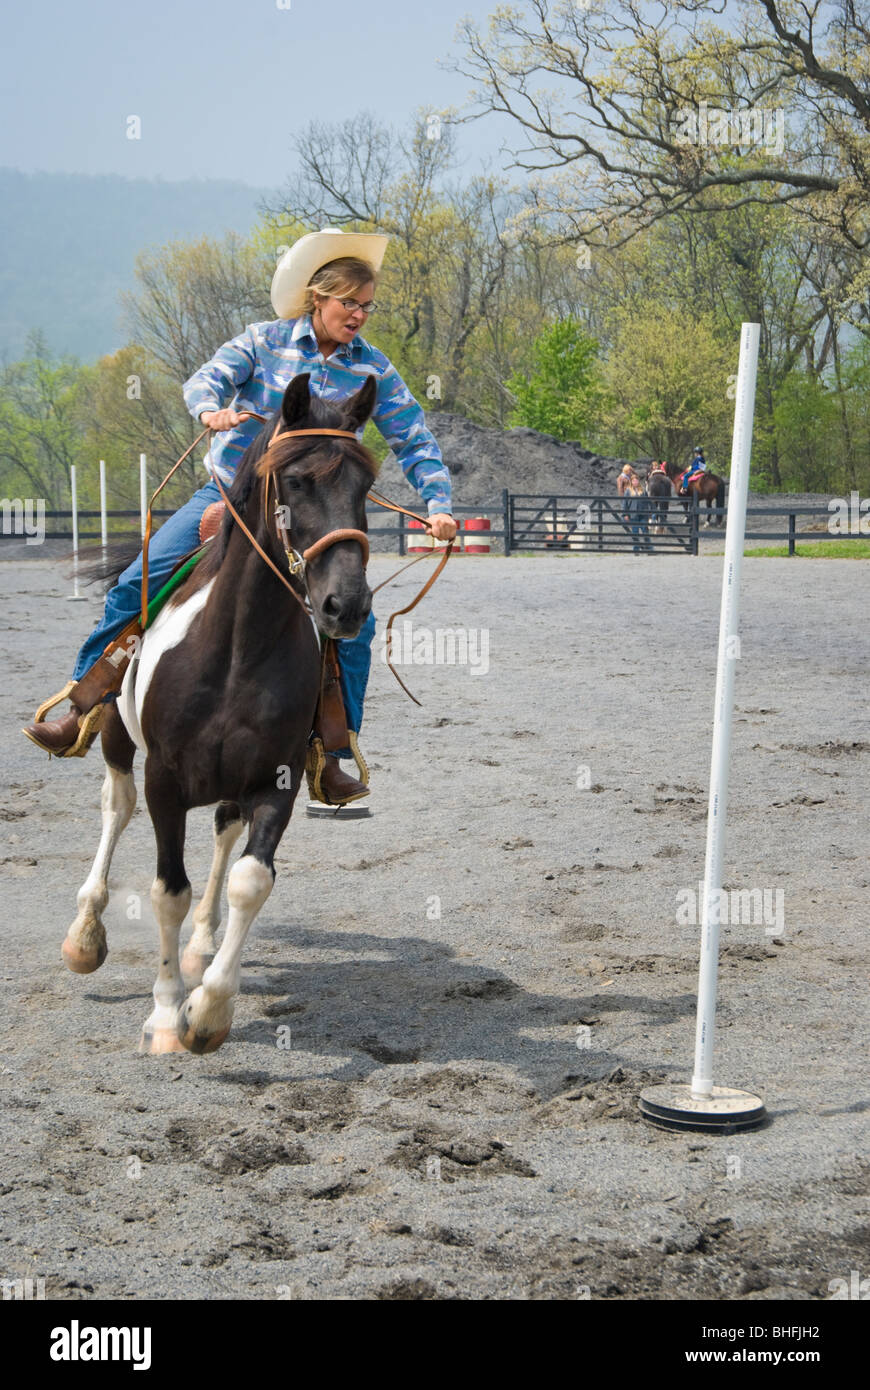 Photo du cavalier au cheval en passant par les pôles au cours d'une compétition. Banque D'Images